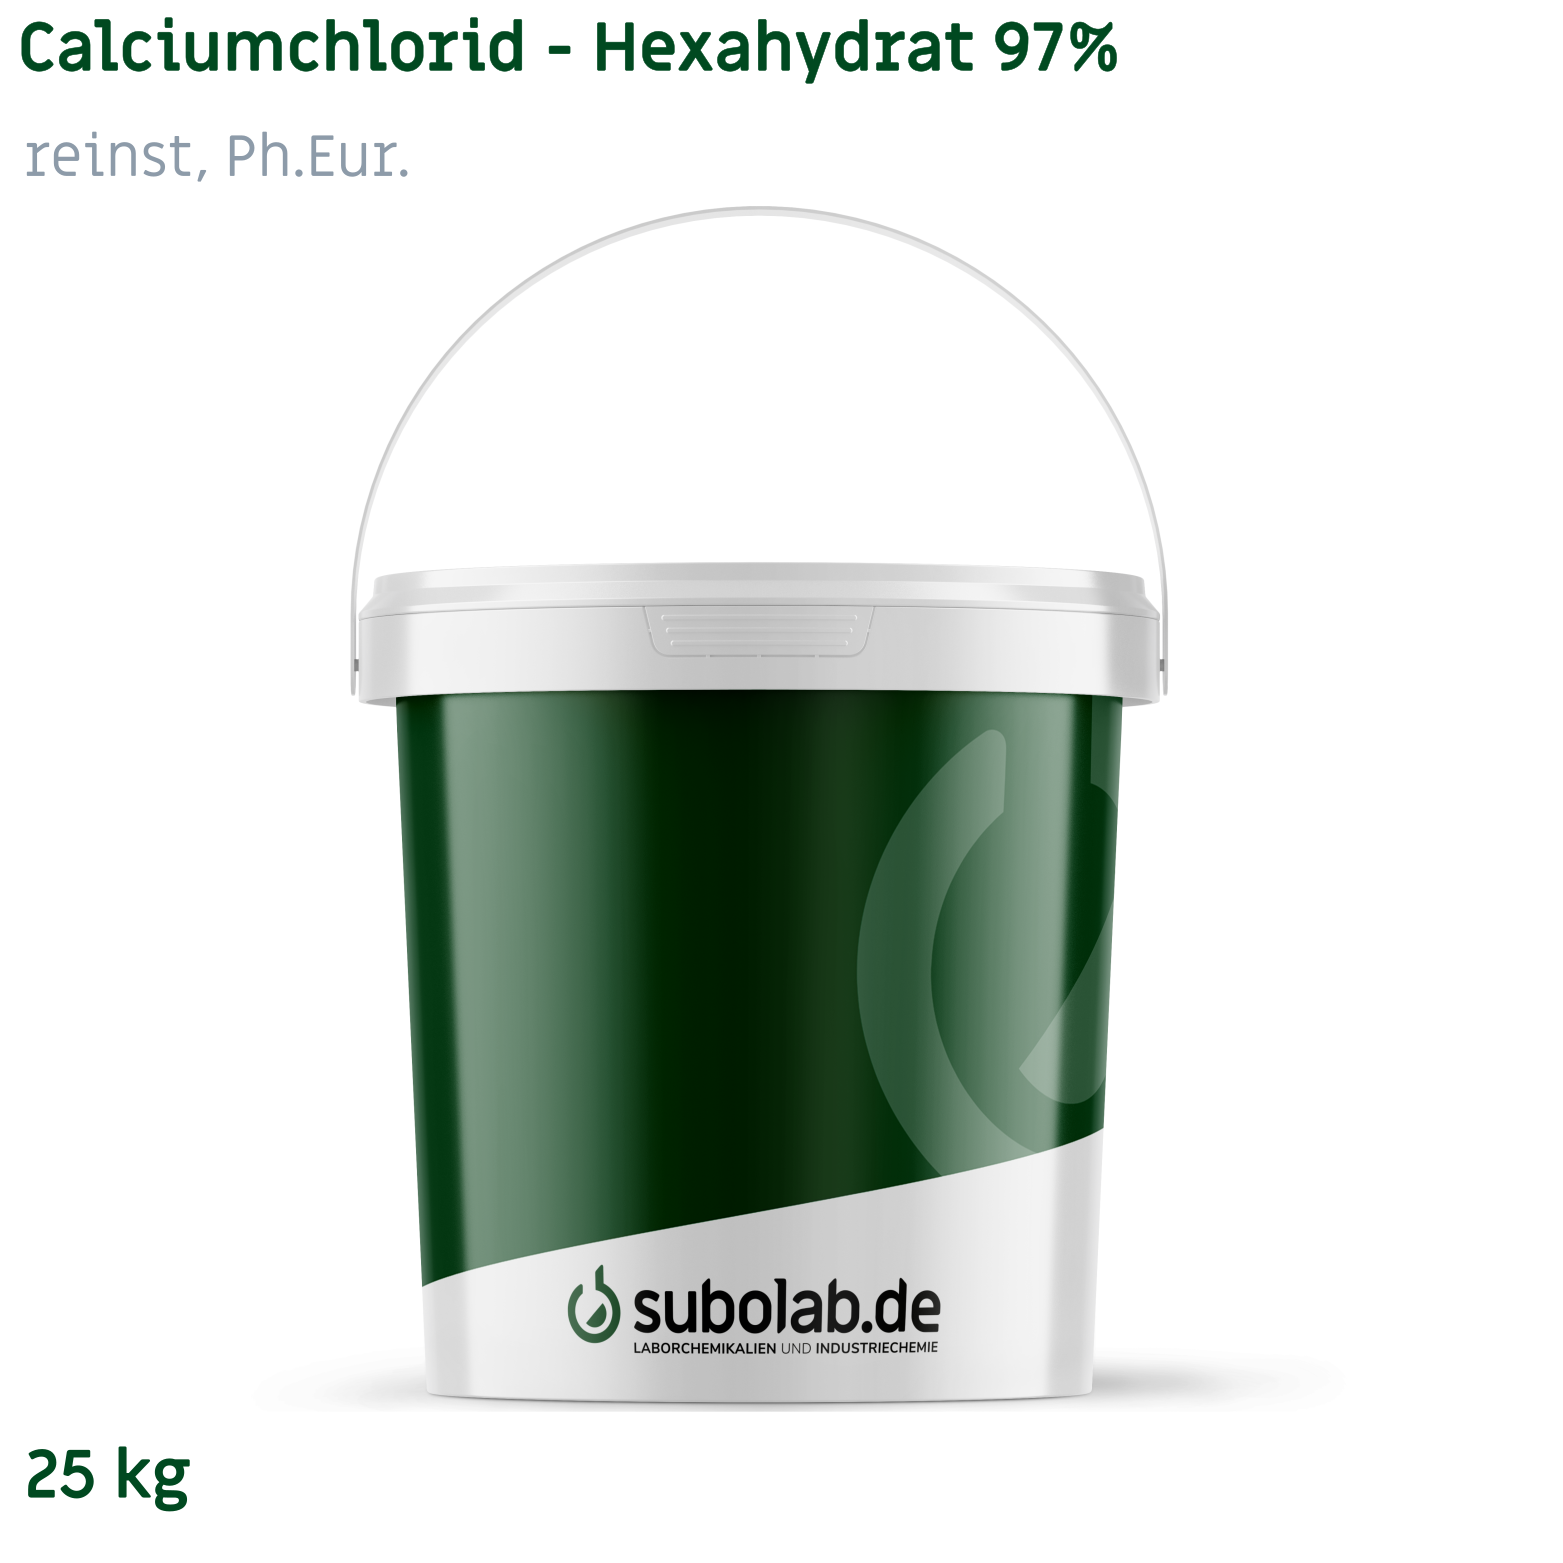 Bild von Calciumchlorid - Hexahydrat 97% reinst, Ph.Eur. (25 kg)